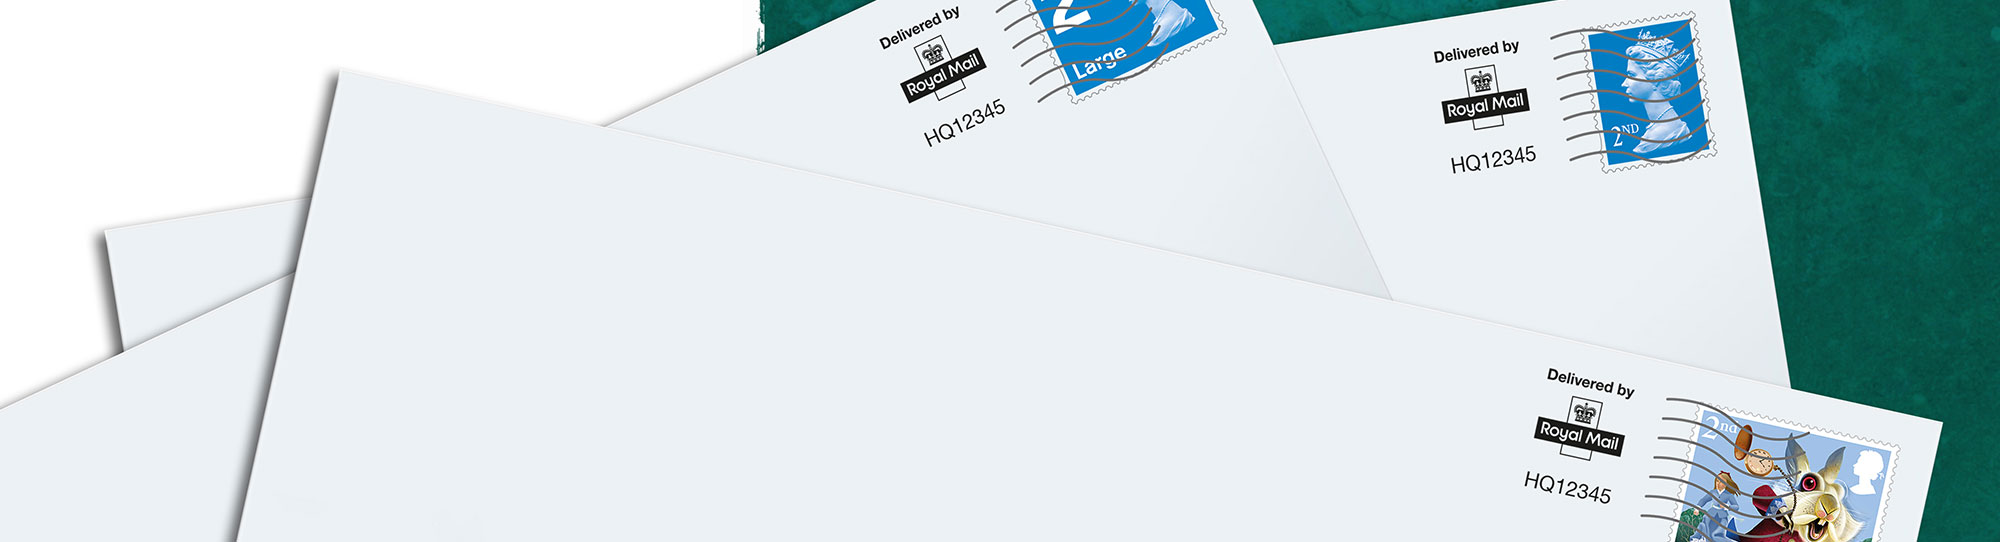 envelope-works-digital-stamp-envelopes